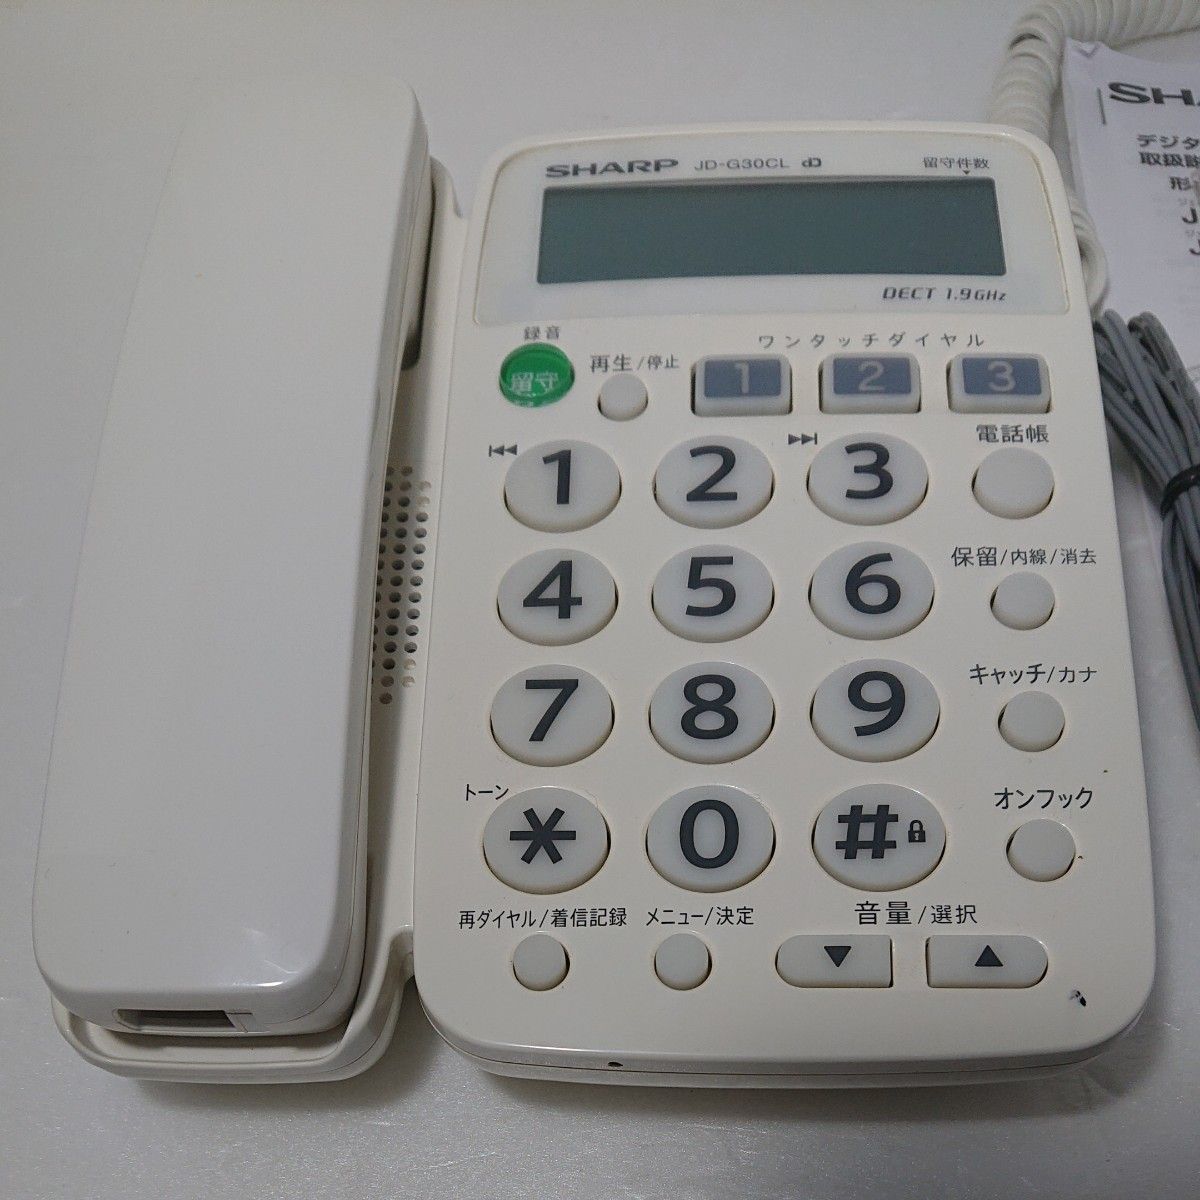 シャープ デジタルコードレス電話機 JD-G30CL-W （子機1台・ホワイト系）動作確認済み 美品  SHARP